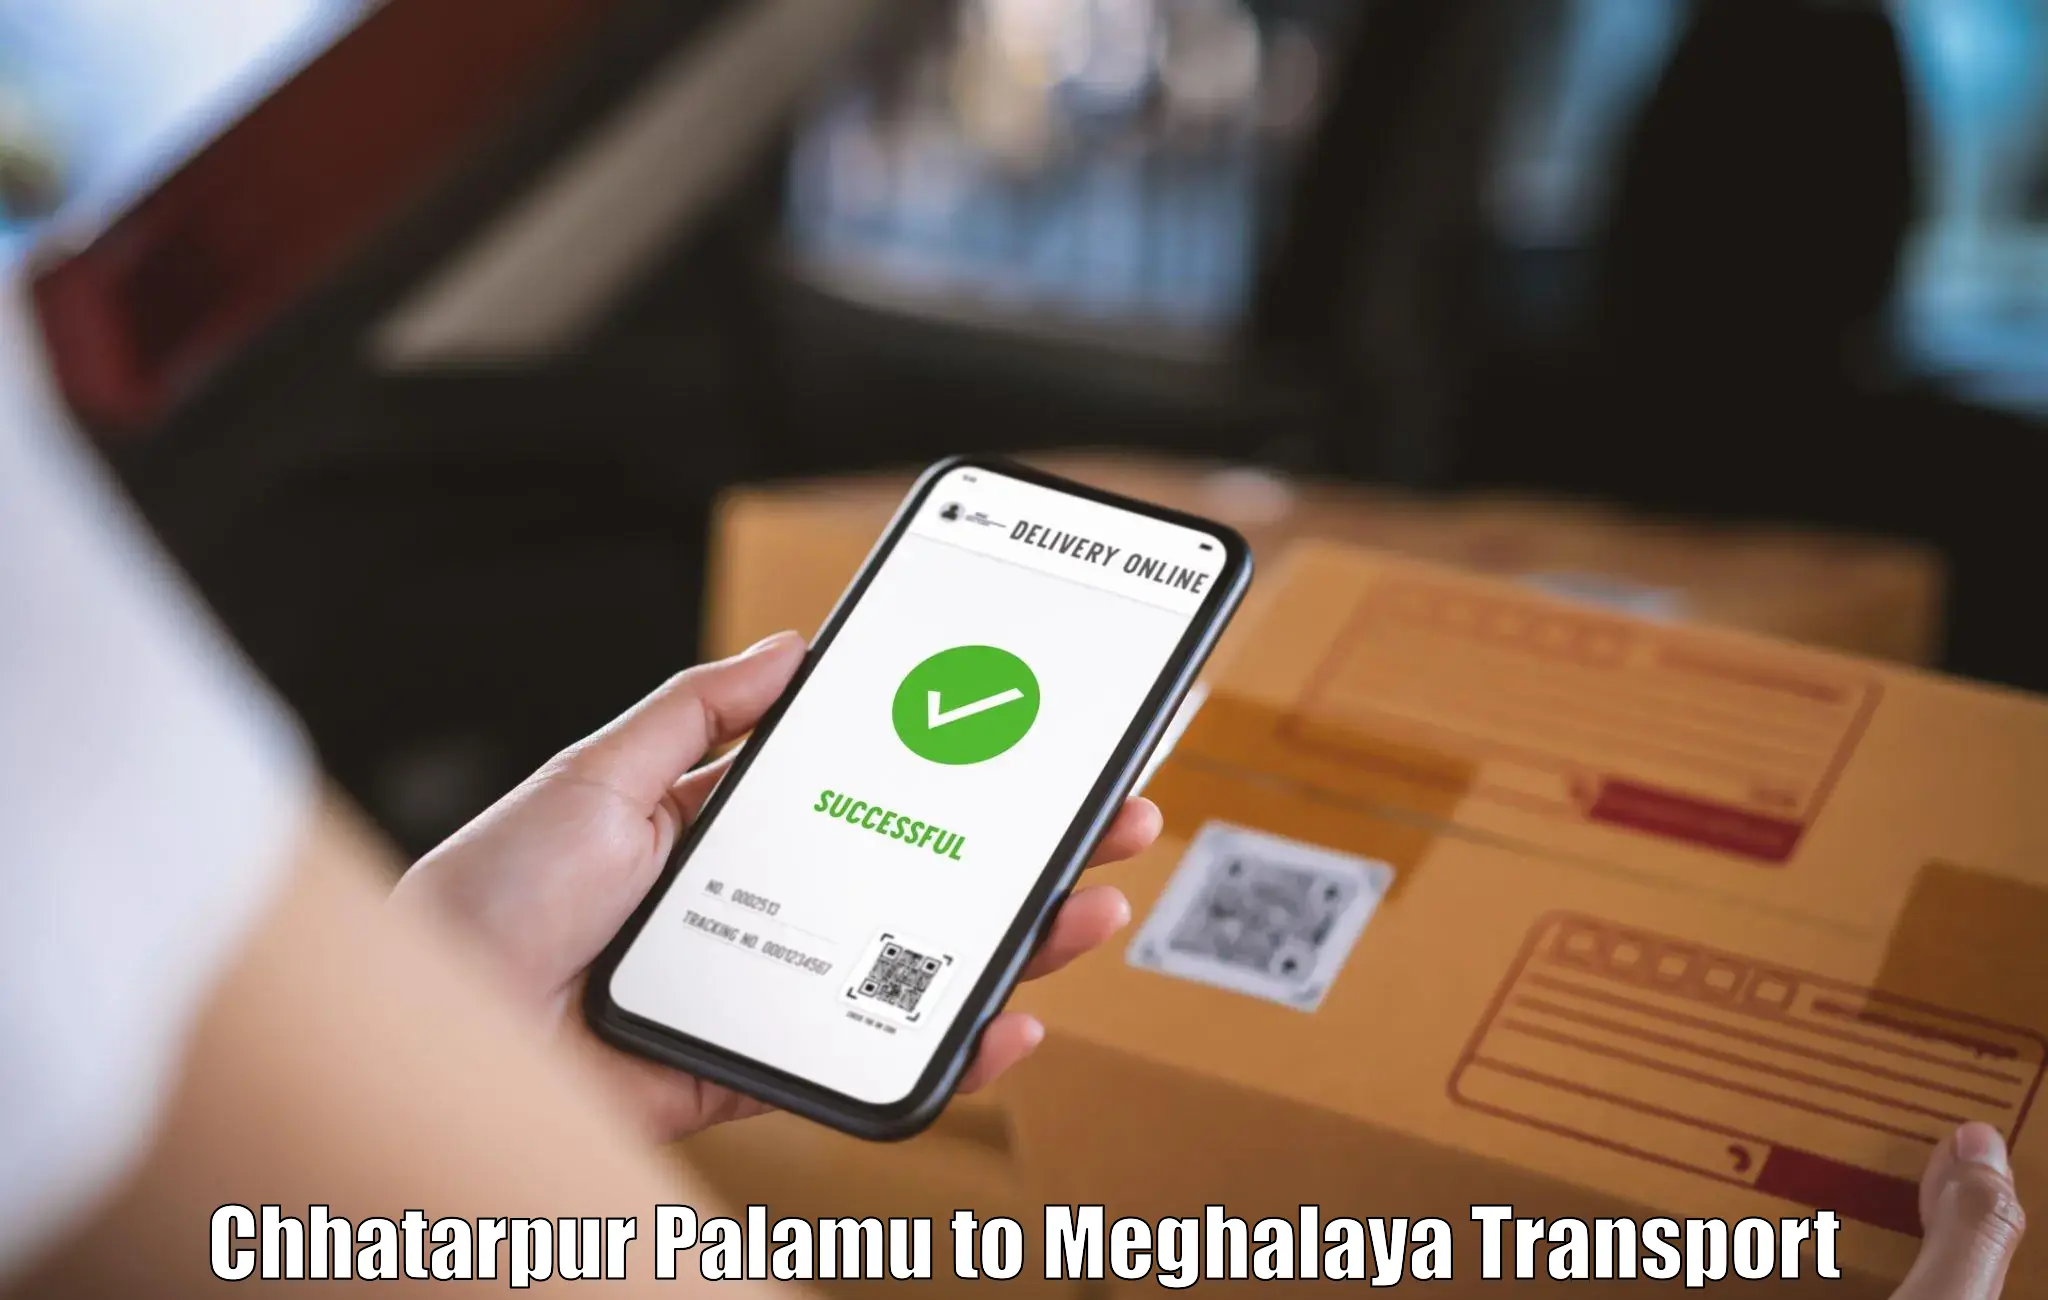 Transport in sharing Chhatarpur Palamu to Meghalaya